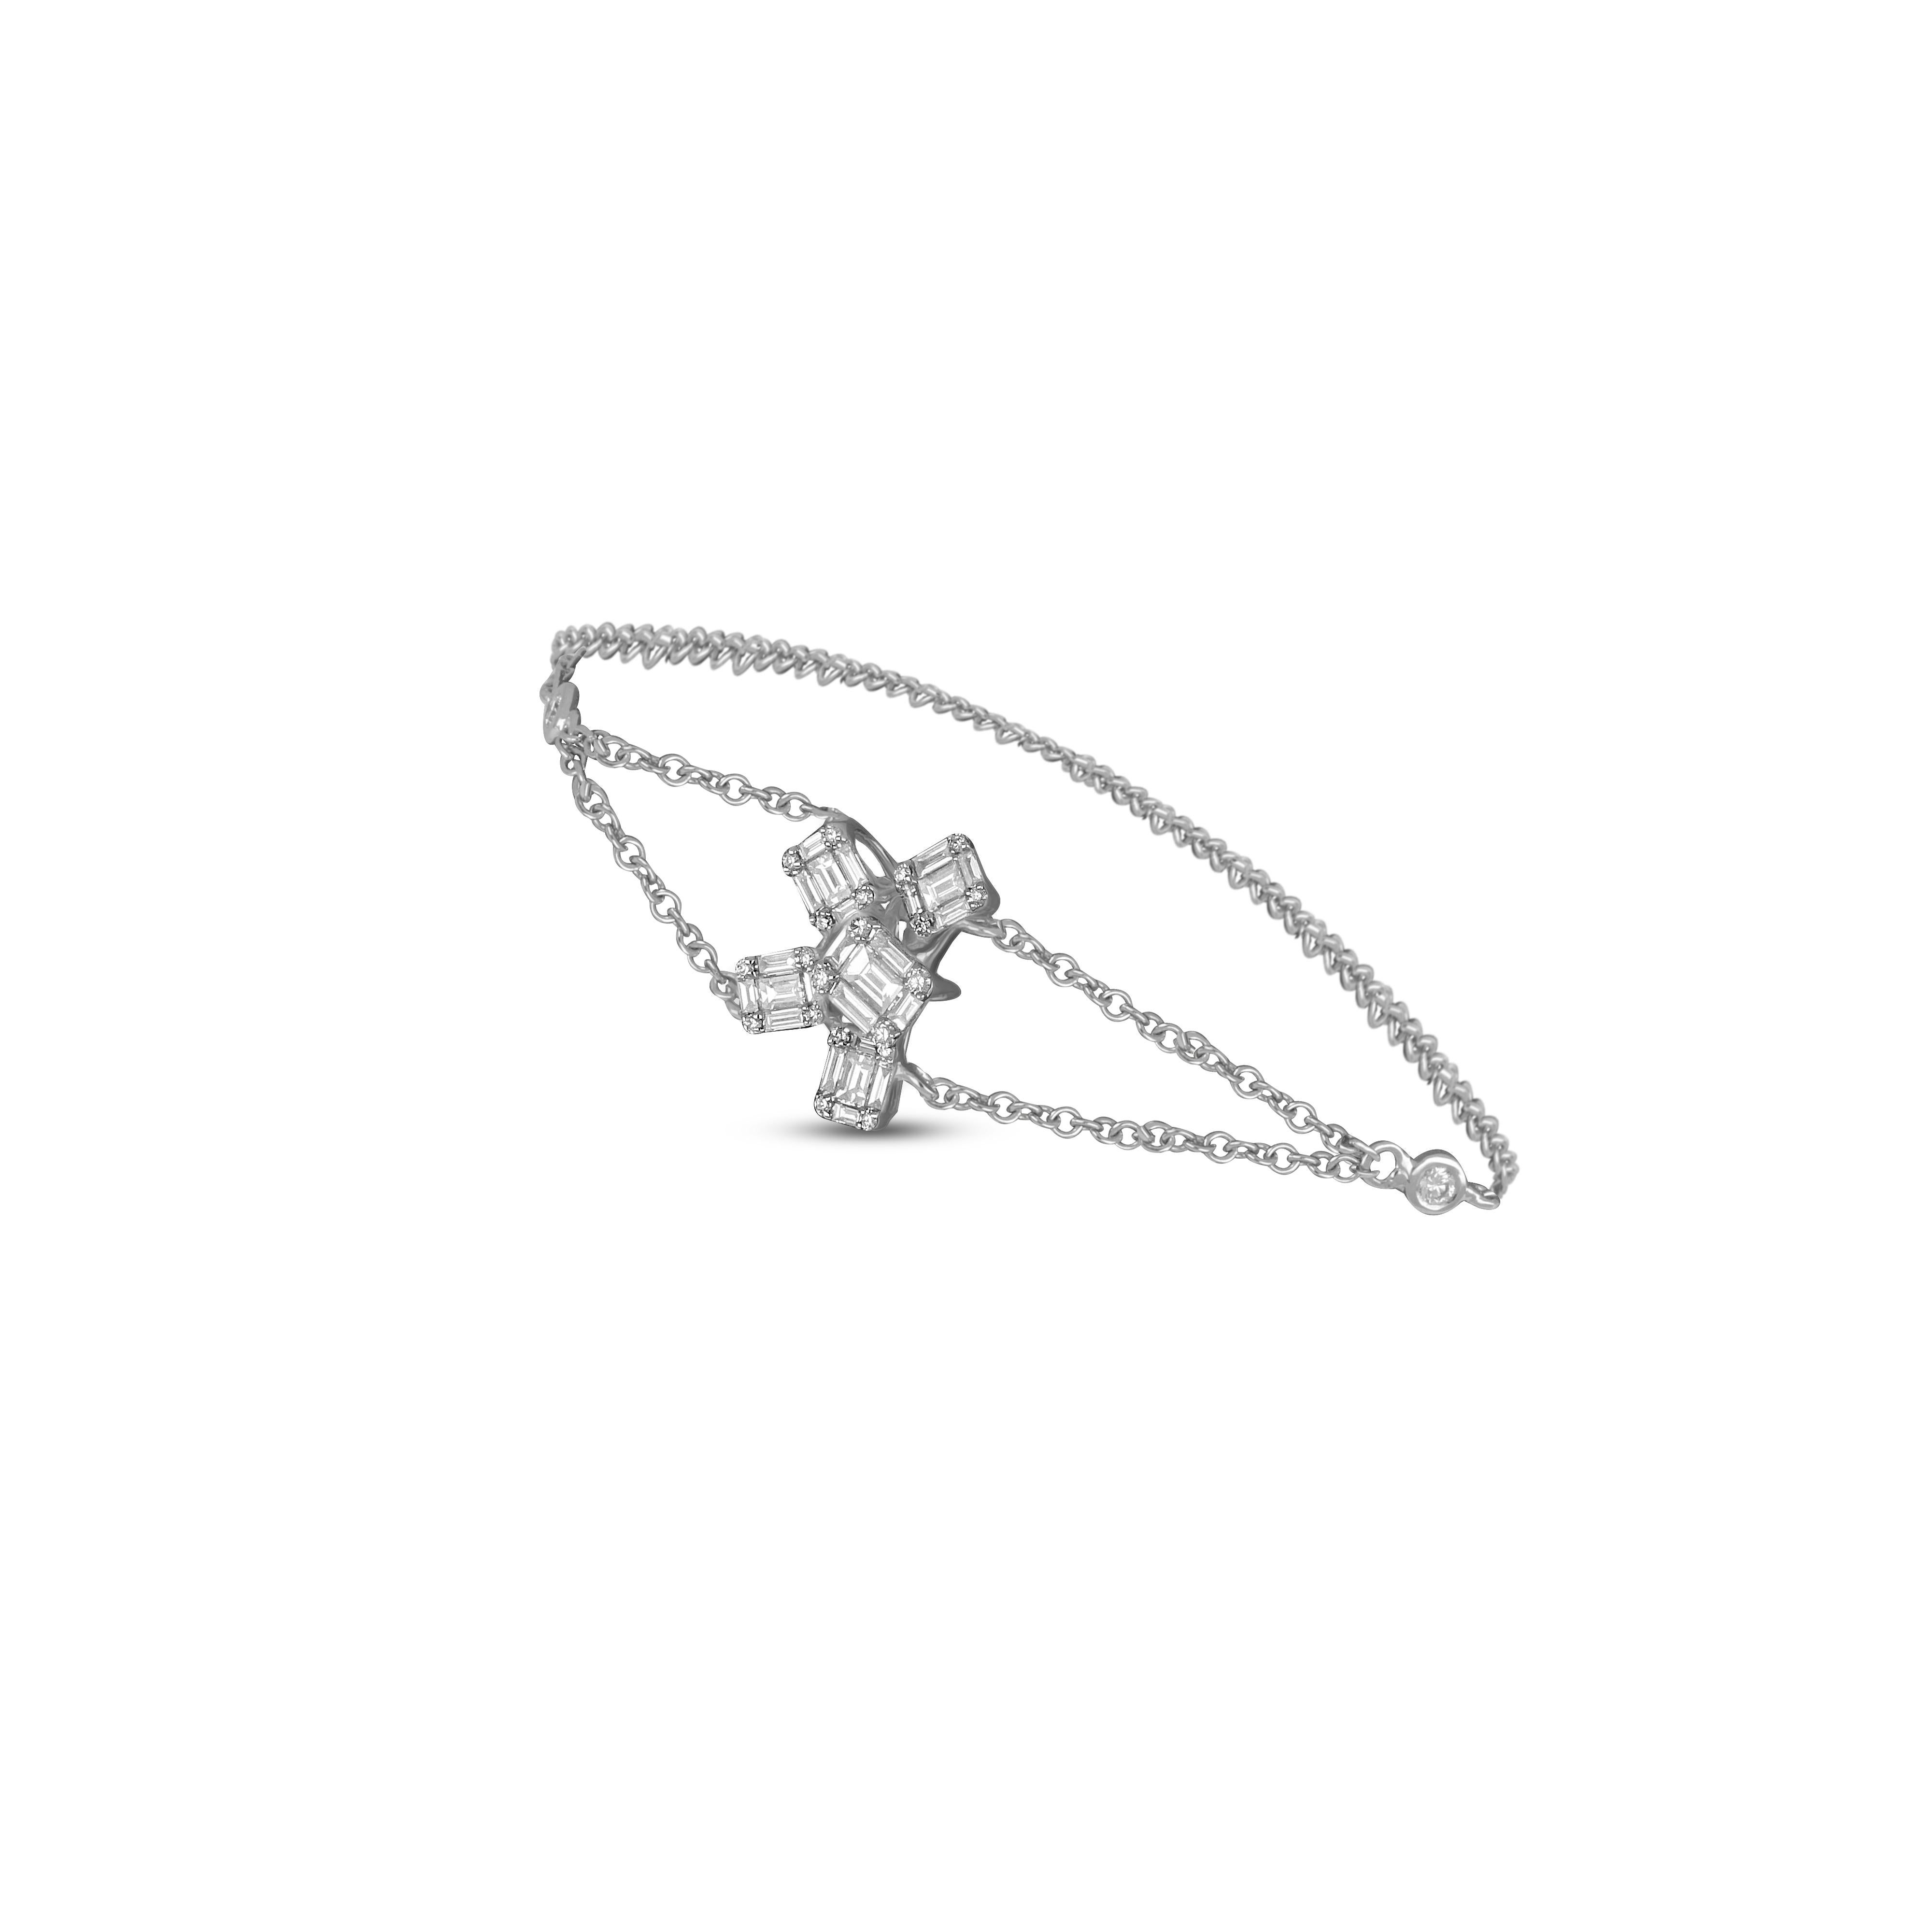 Brillante kleine Diamanten werden in einer minimalen Fassung in diesem 18 Karat Roségold präsentiert. Eine Reihe von Diamanten im Rundschliff umgibt das Handgelenk und bildet ein schlankes Birnenmotiv. Dieses zarte Schmuckstück kann allein getragen